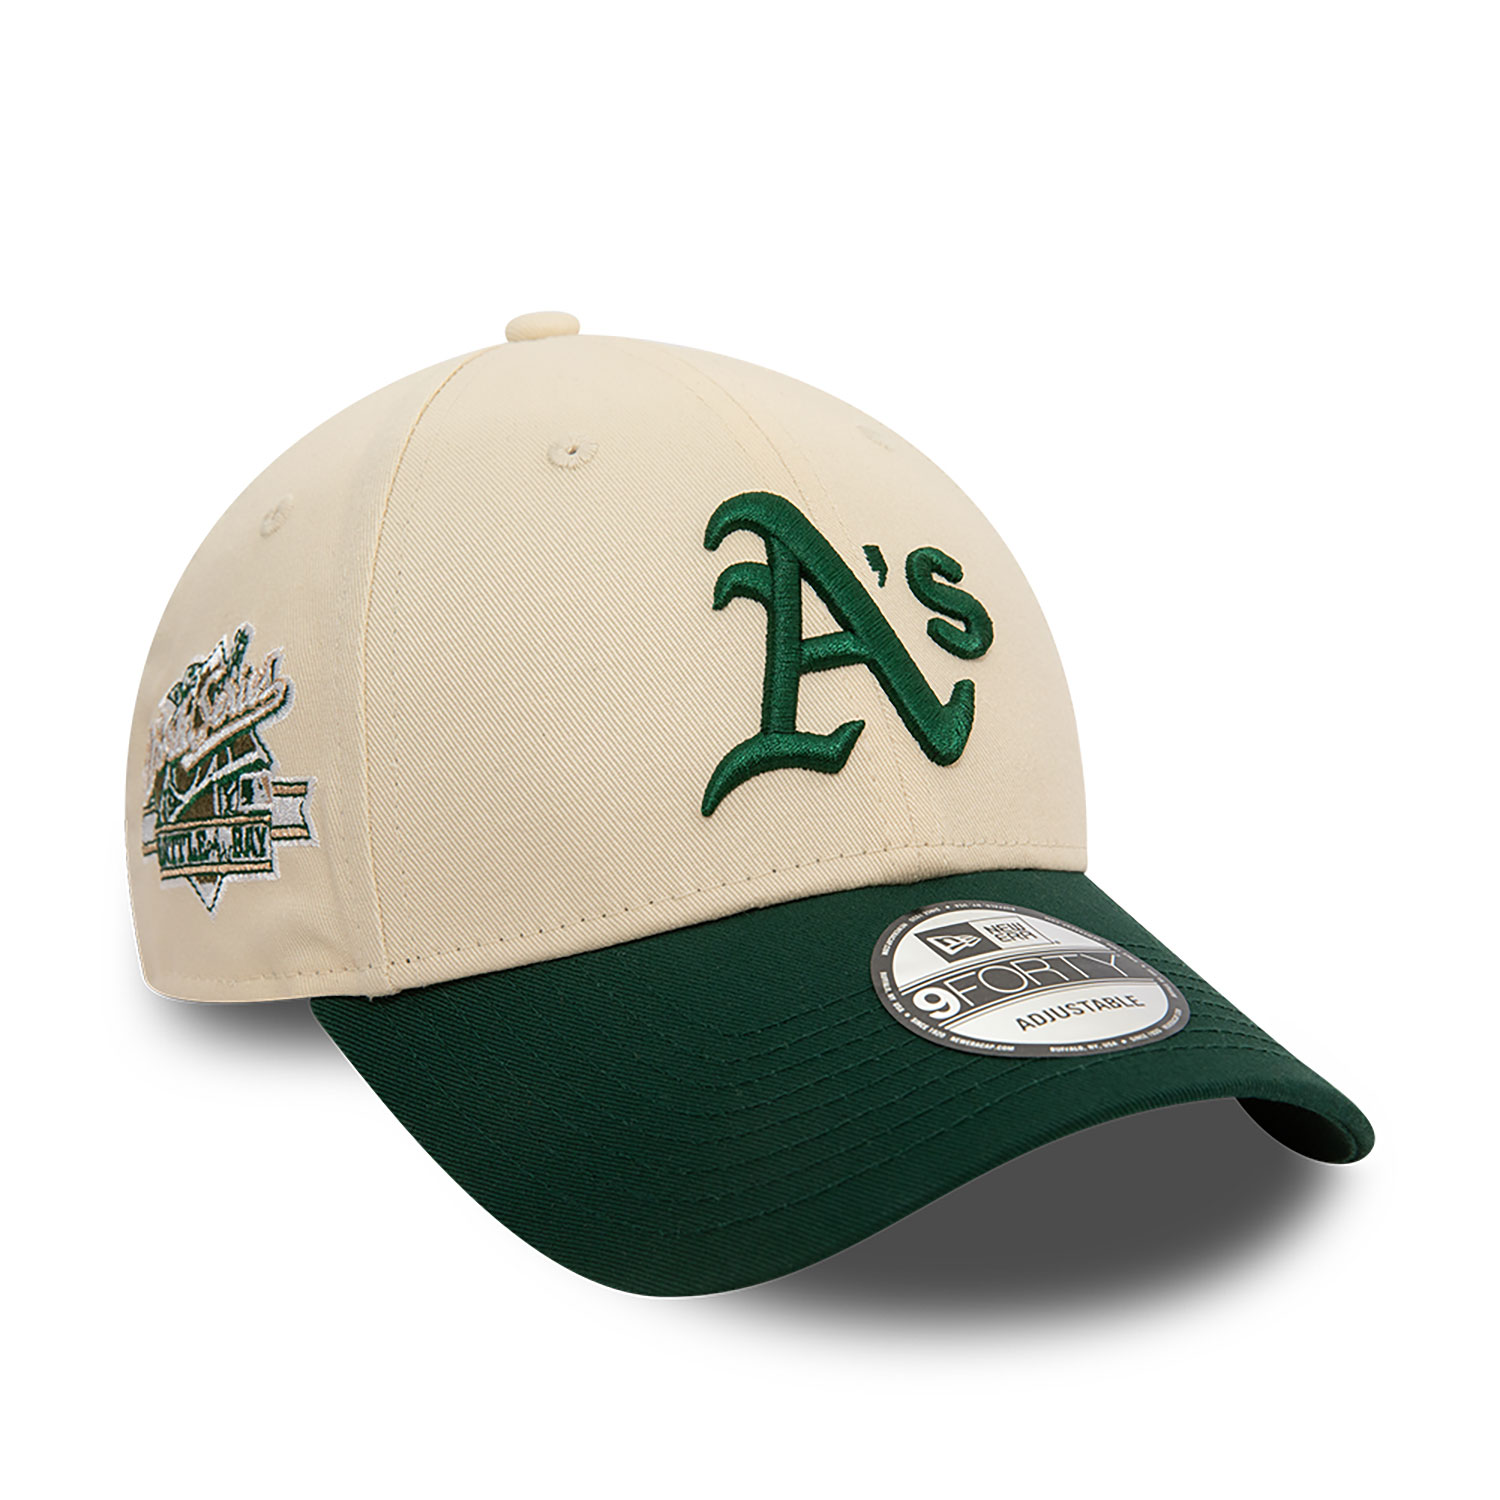 Oakland Athletics Caps, Hats & Clothing | Oakland A's | New Era Cap UK